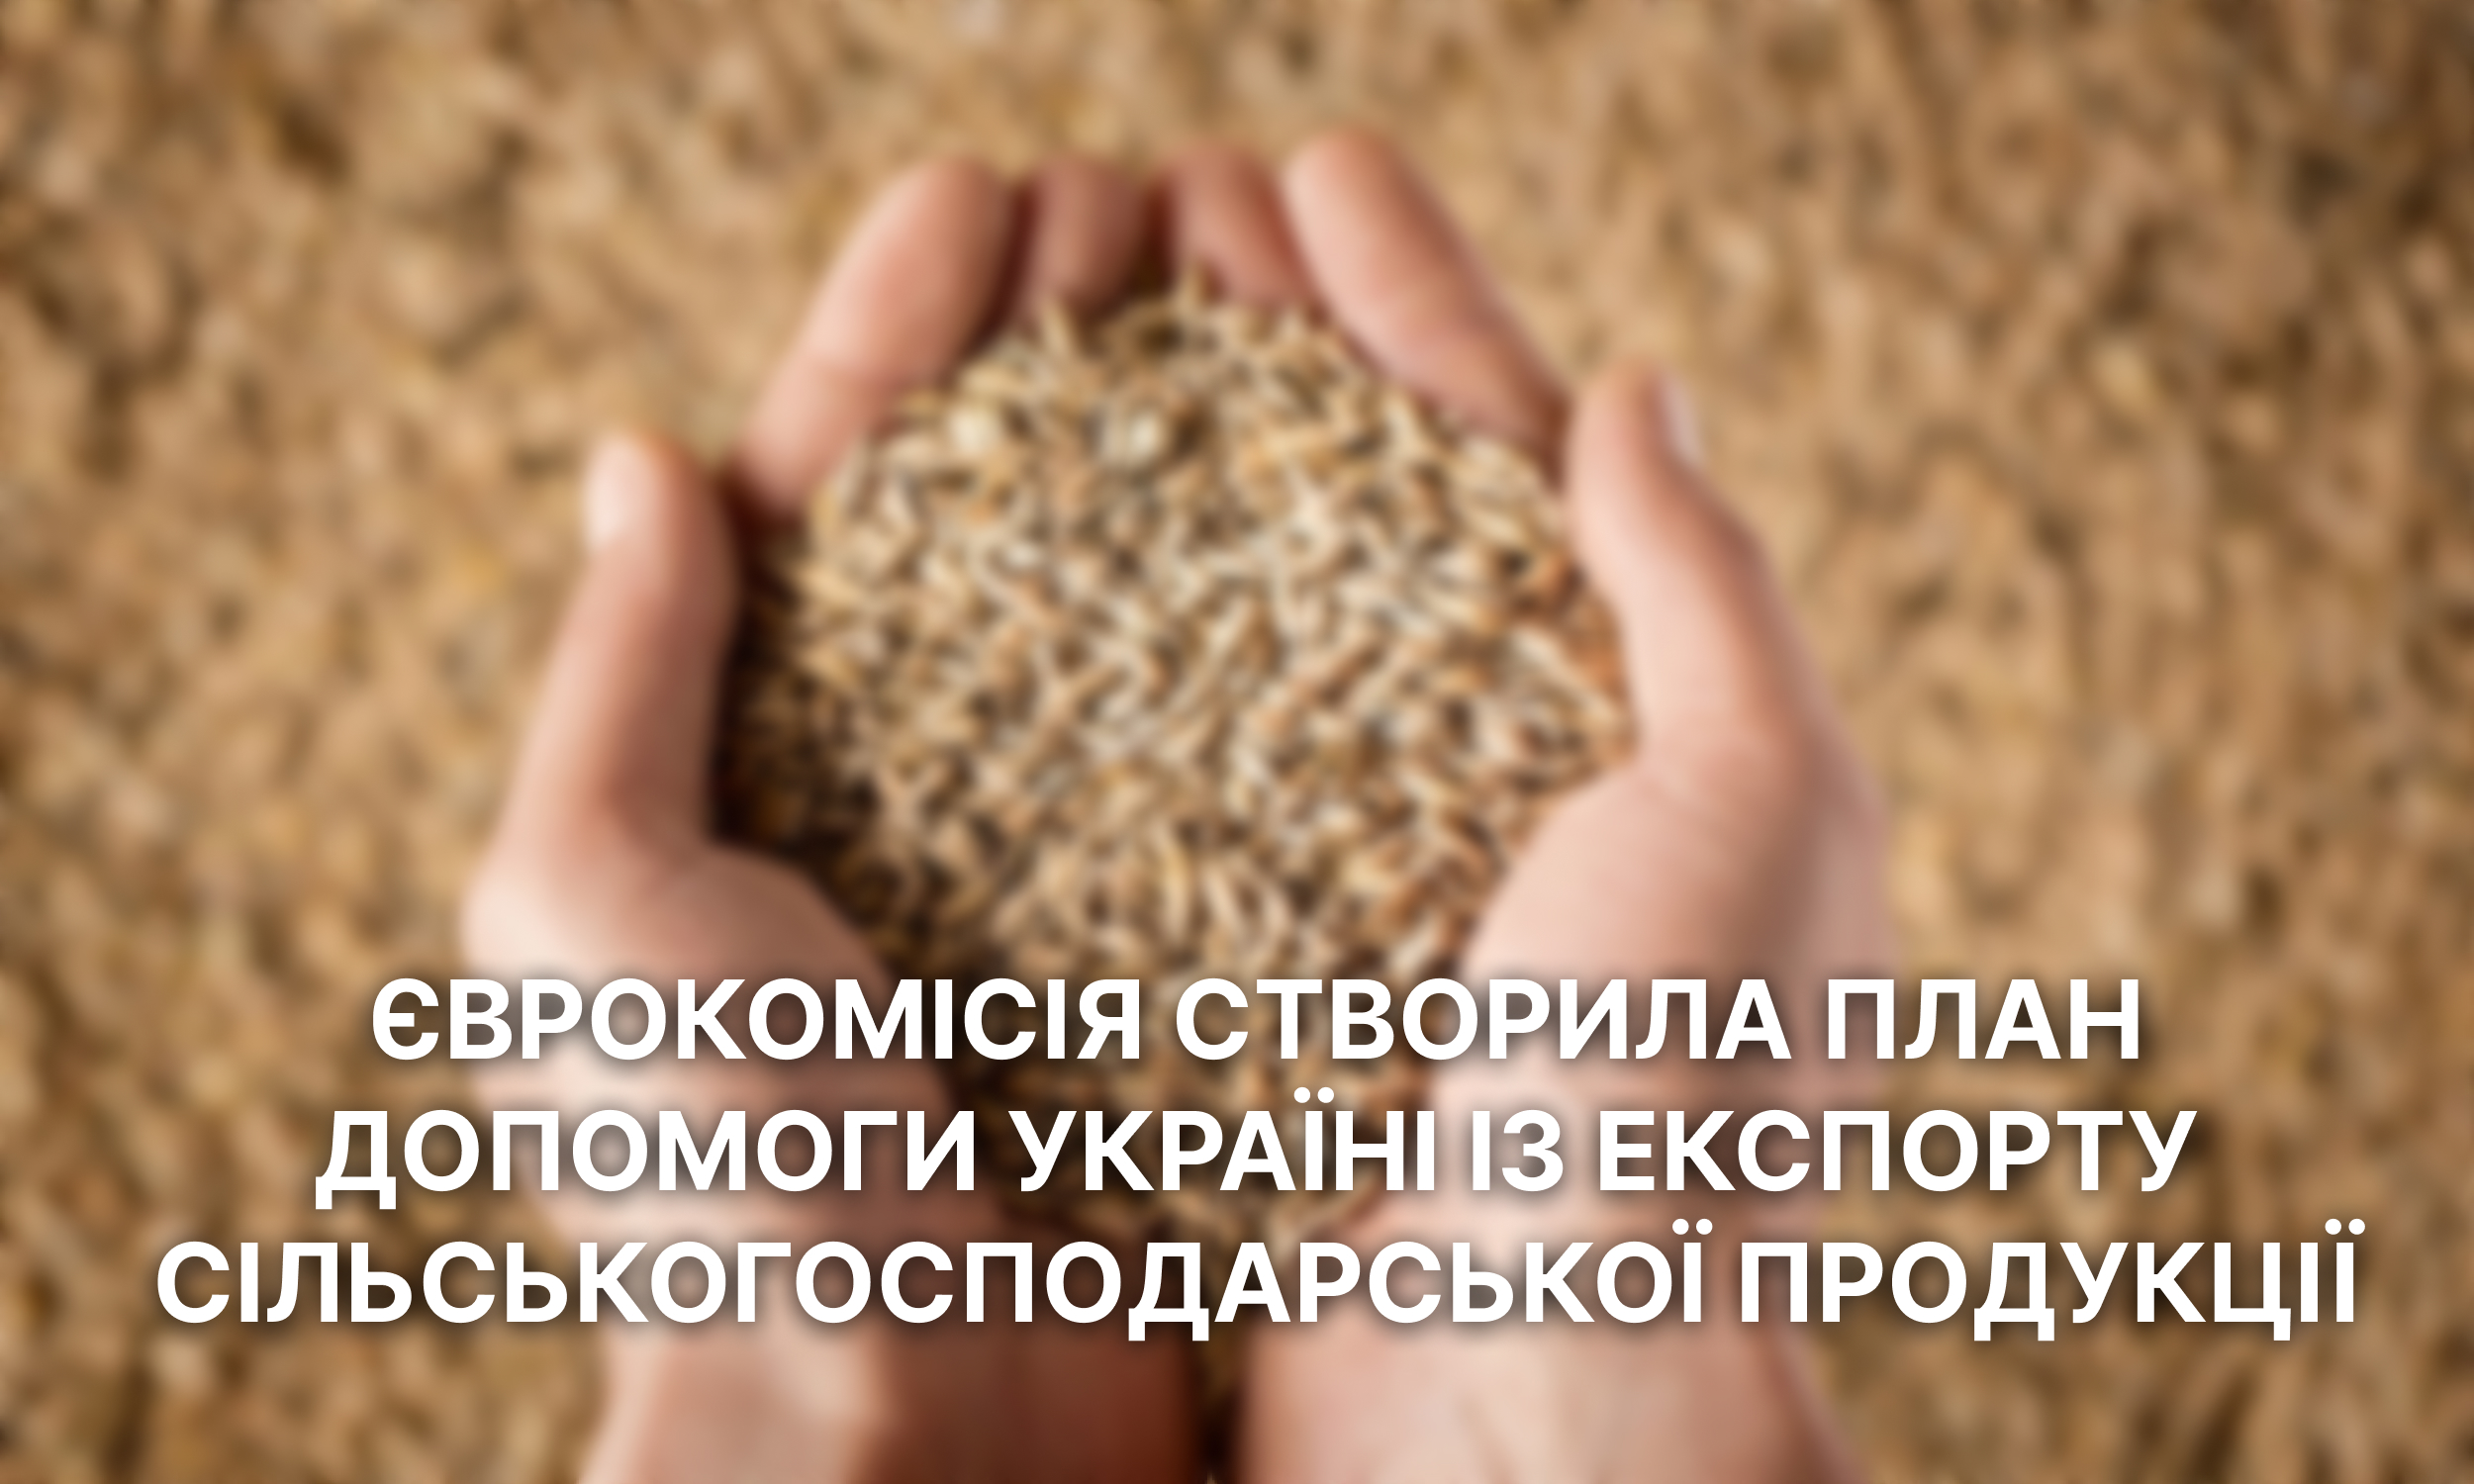 Єврокомісія створила план допомоги Україні із експорту сільськогосподарської продукції